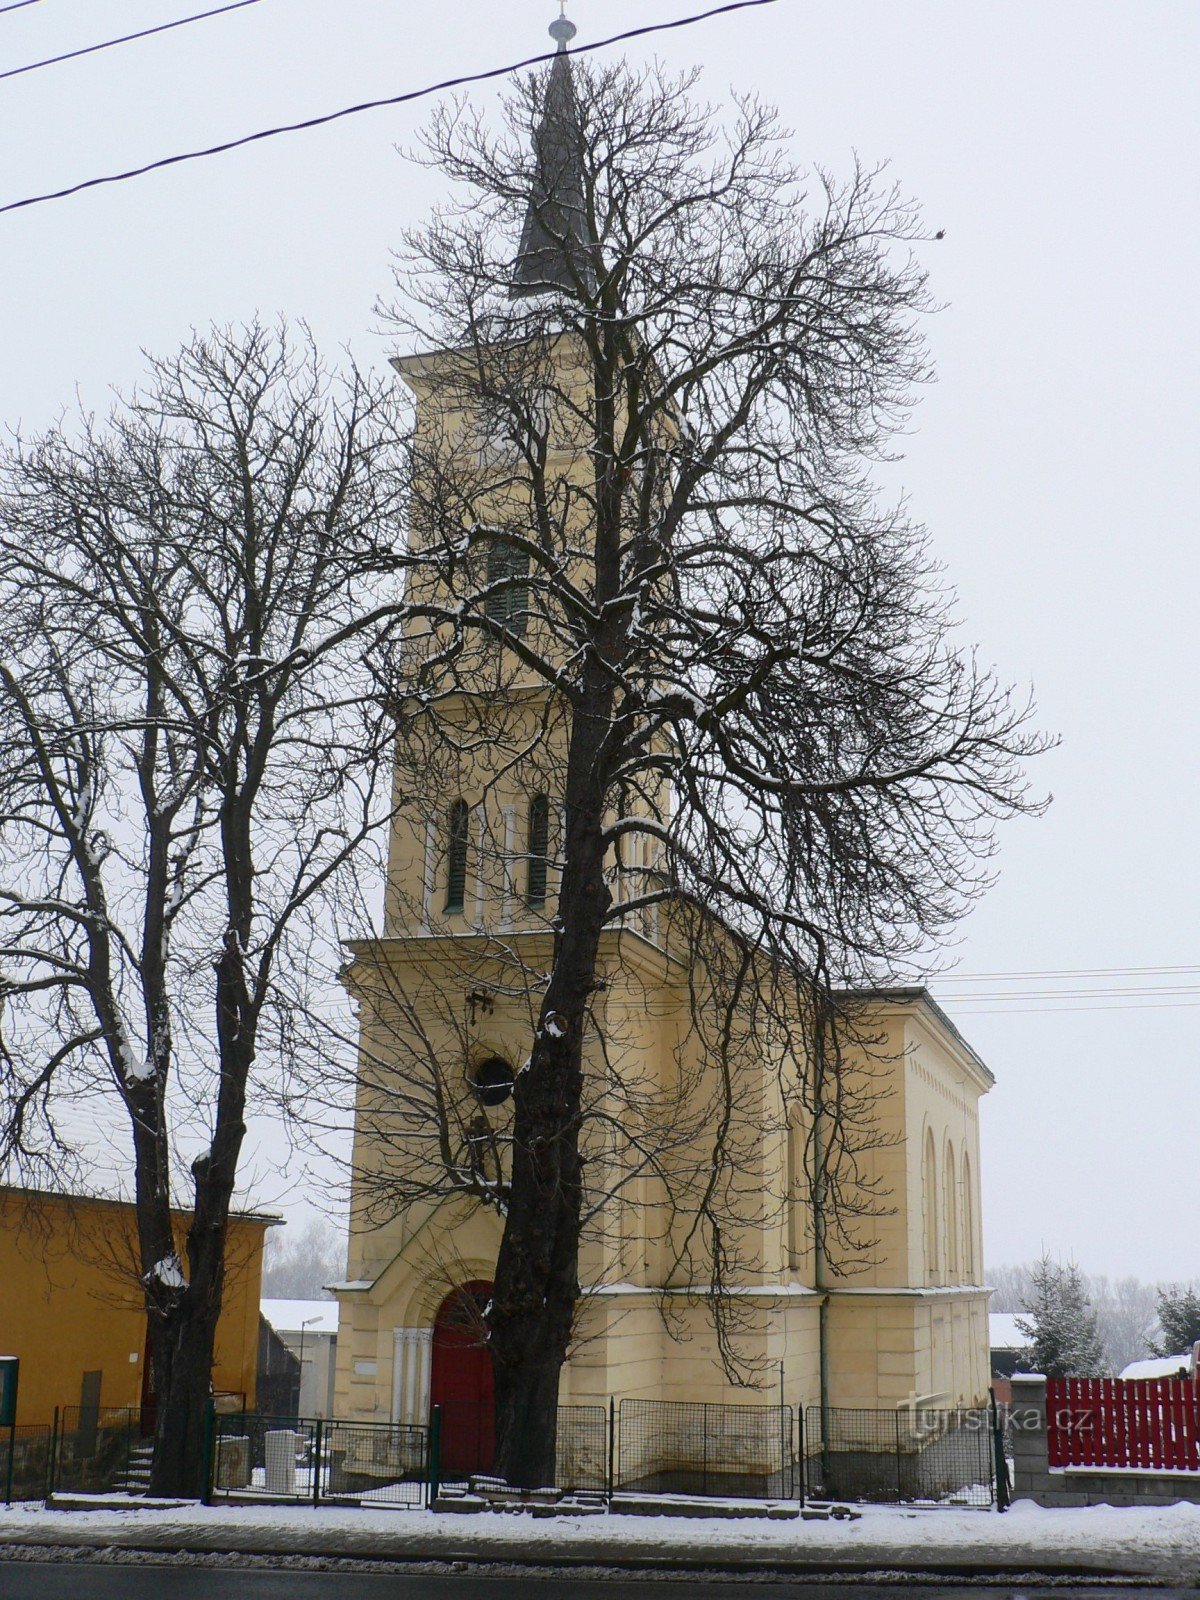 l'église a été mal photographiée - elle est cachée derrière des arbres